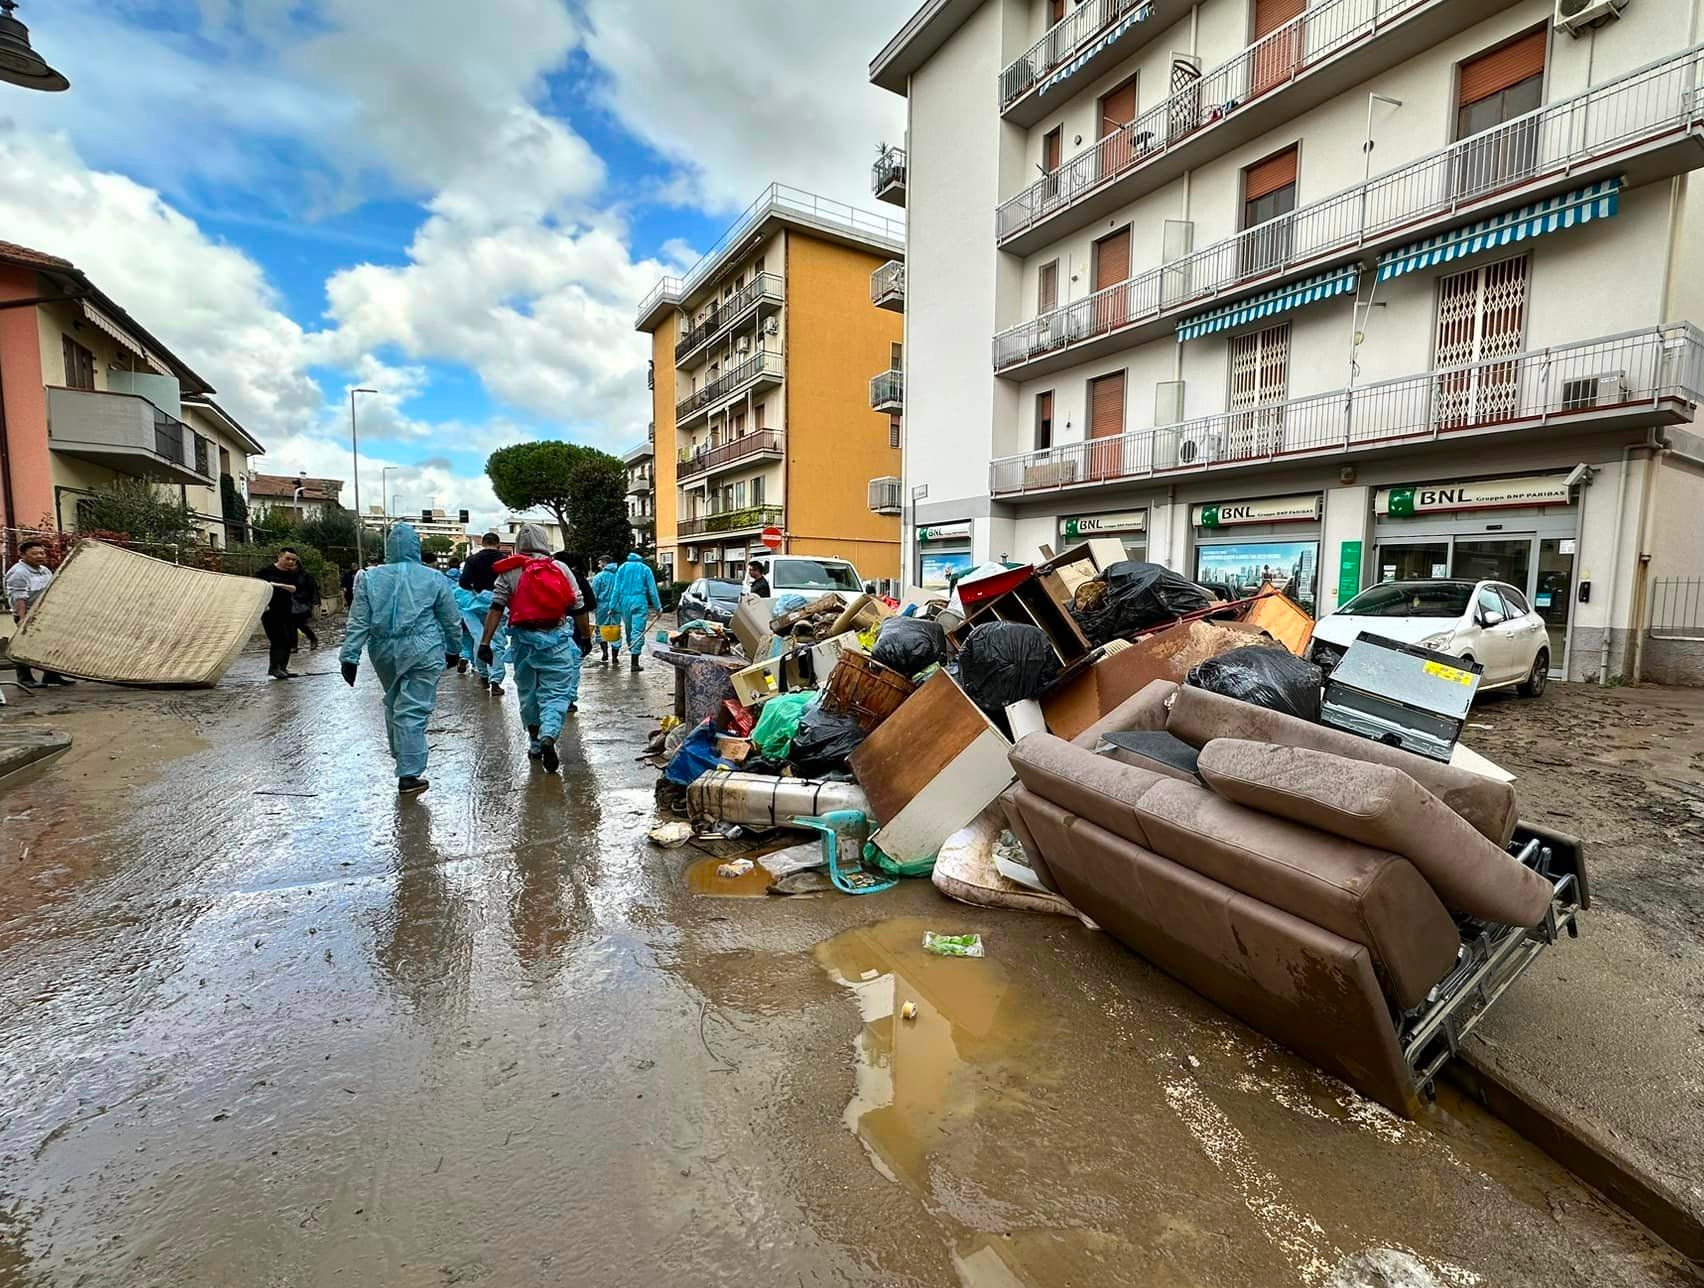 Windtre dona Giga ai toscani colpiti dall'alluvione - gonews.it